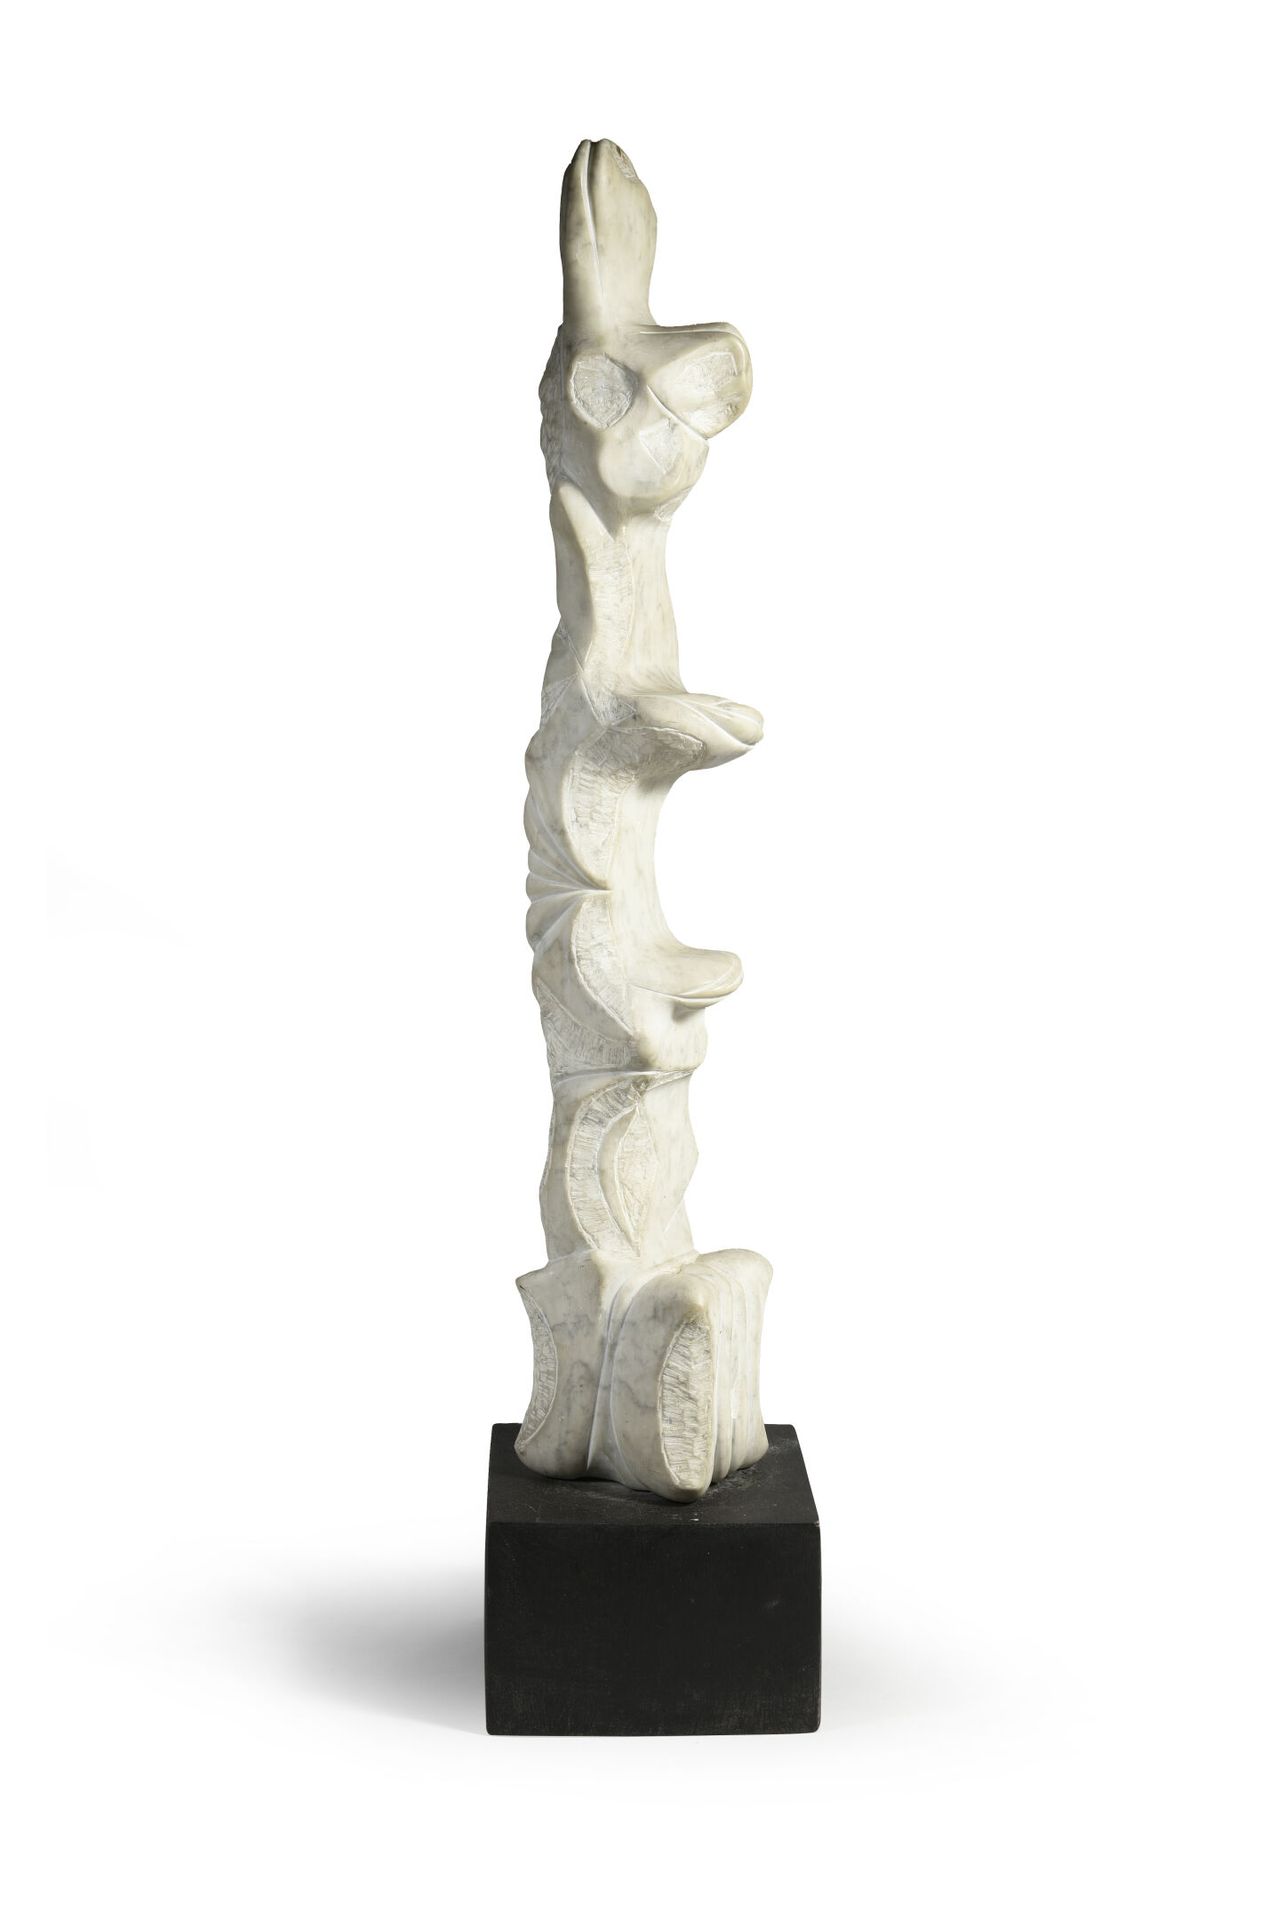 Luis MARTINEZ RICHIER (1928) Unbetitelt.

Skulptur aus weißem Marmor.

Sockel au&hellip;